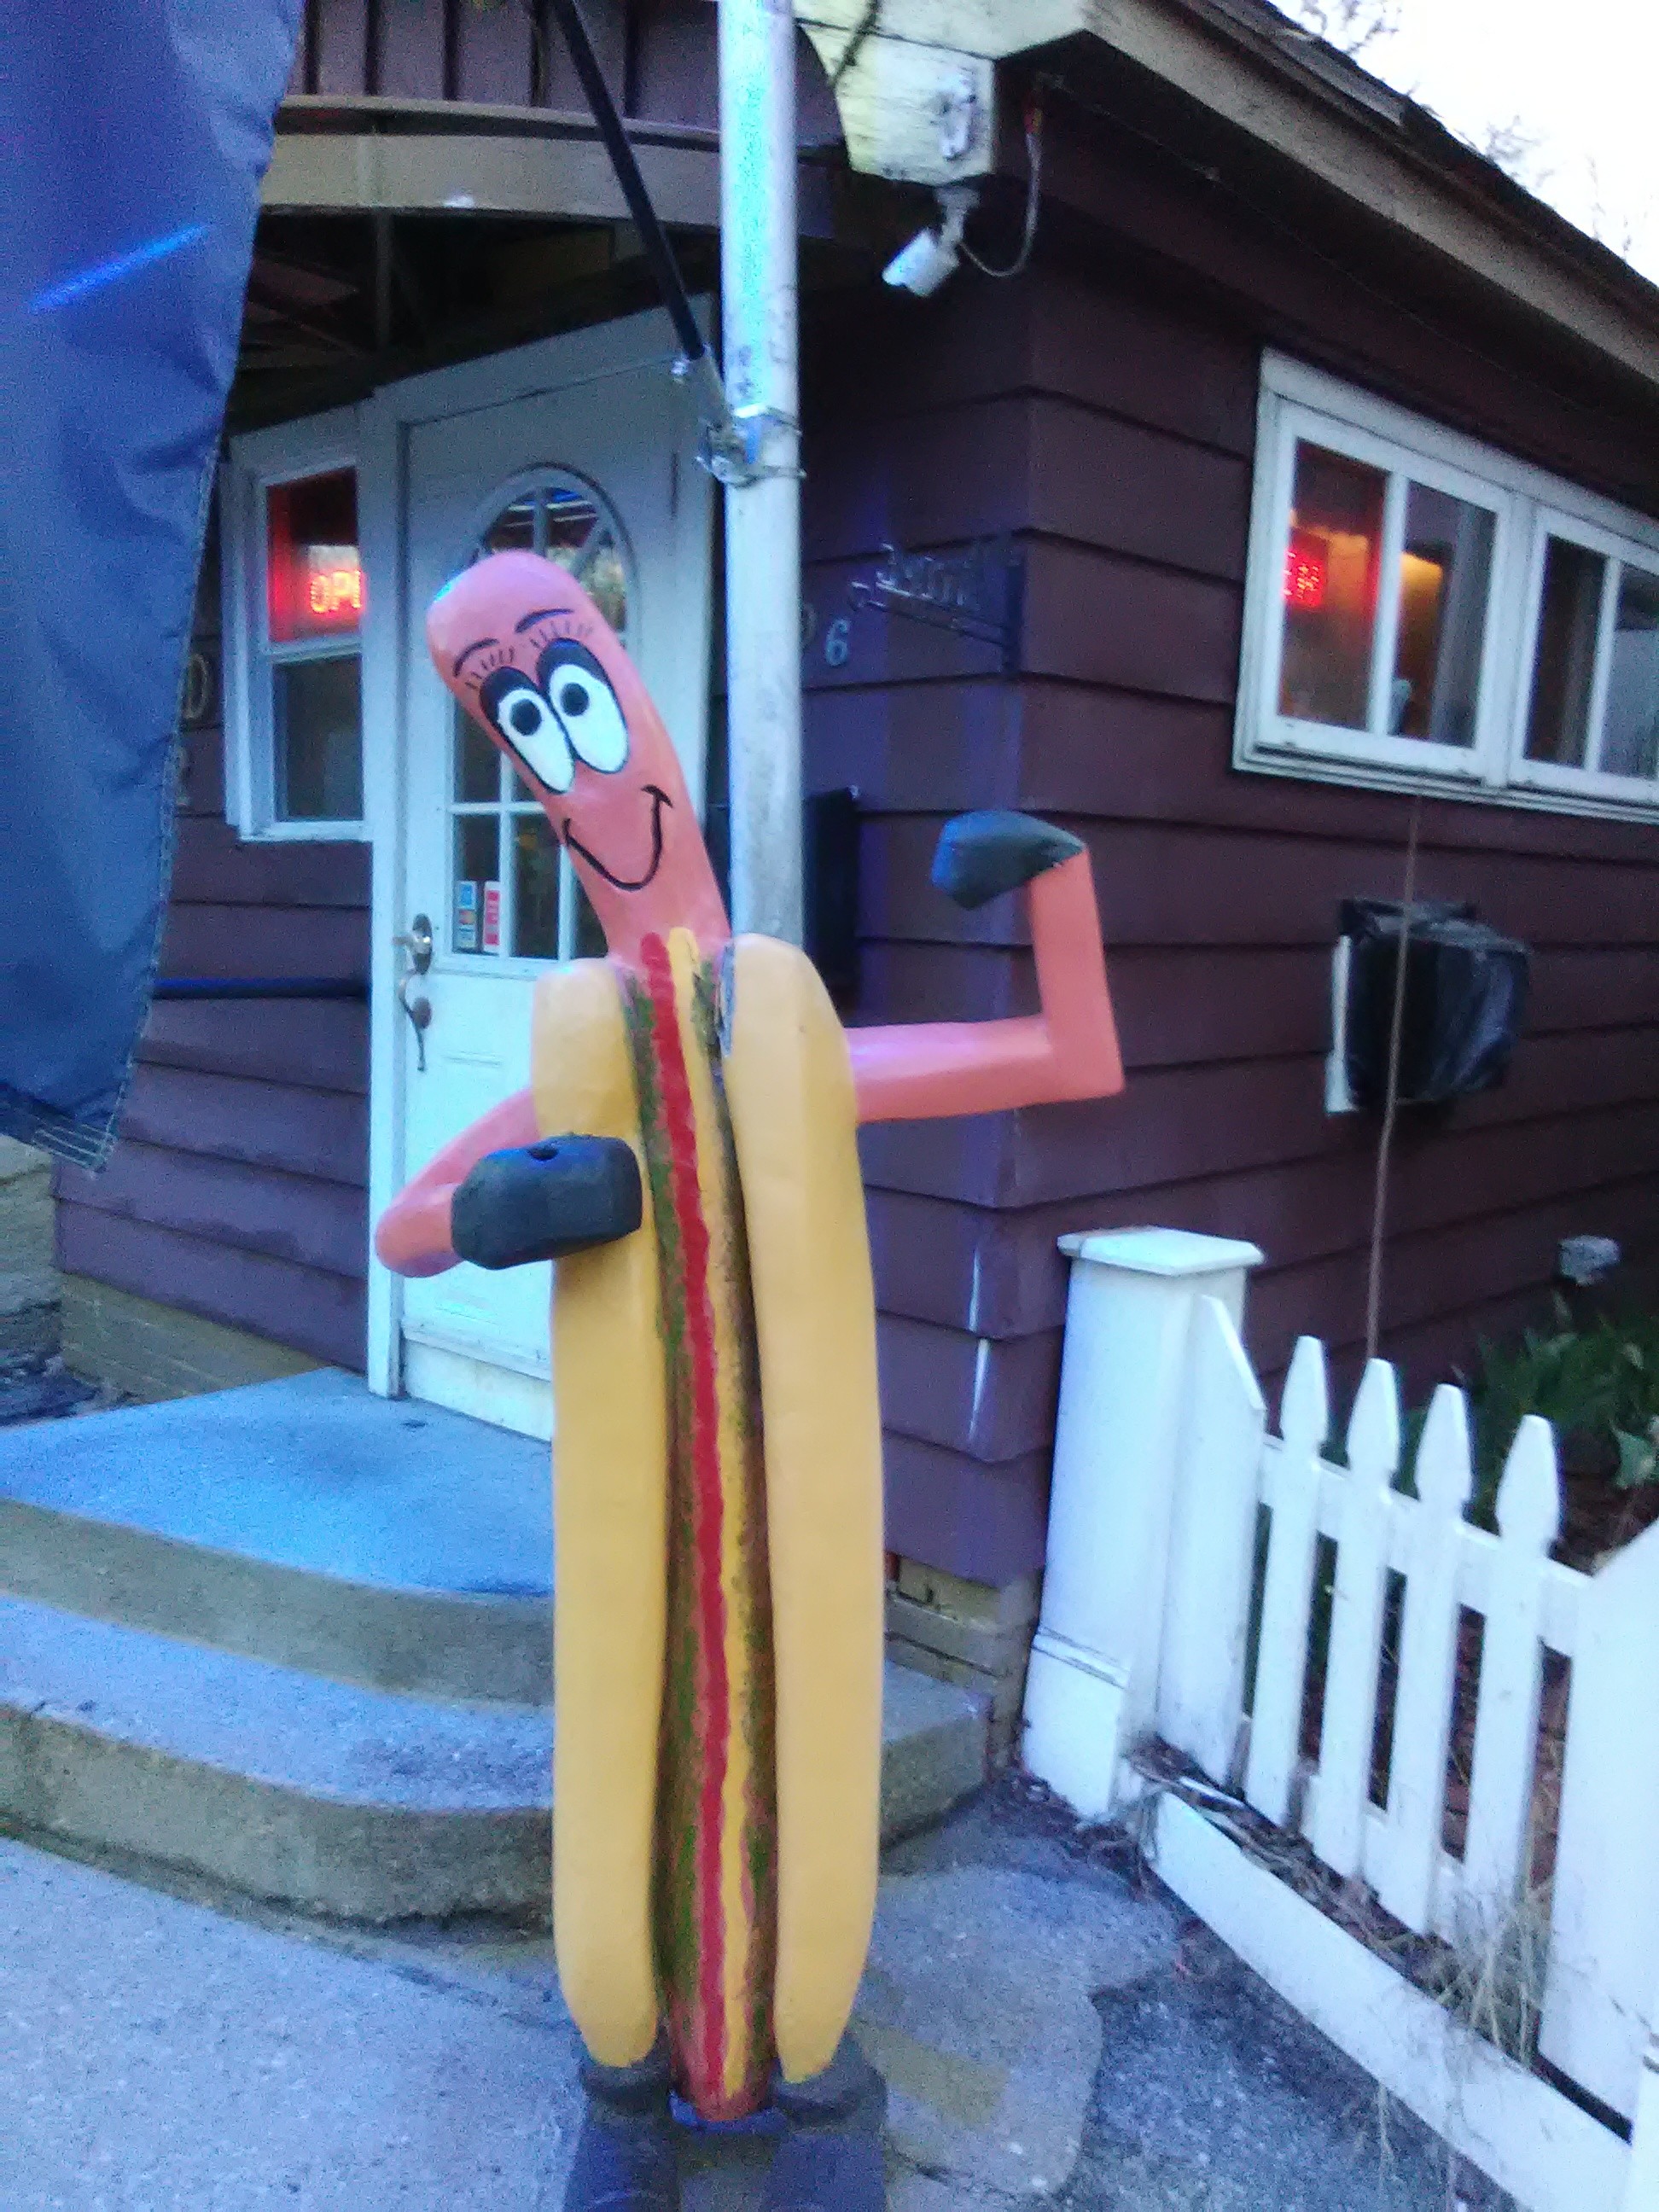 Winsted Diner - Hot dog man!